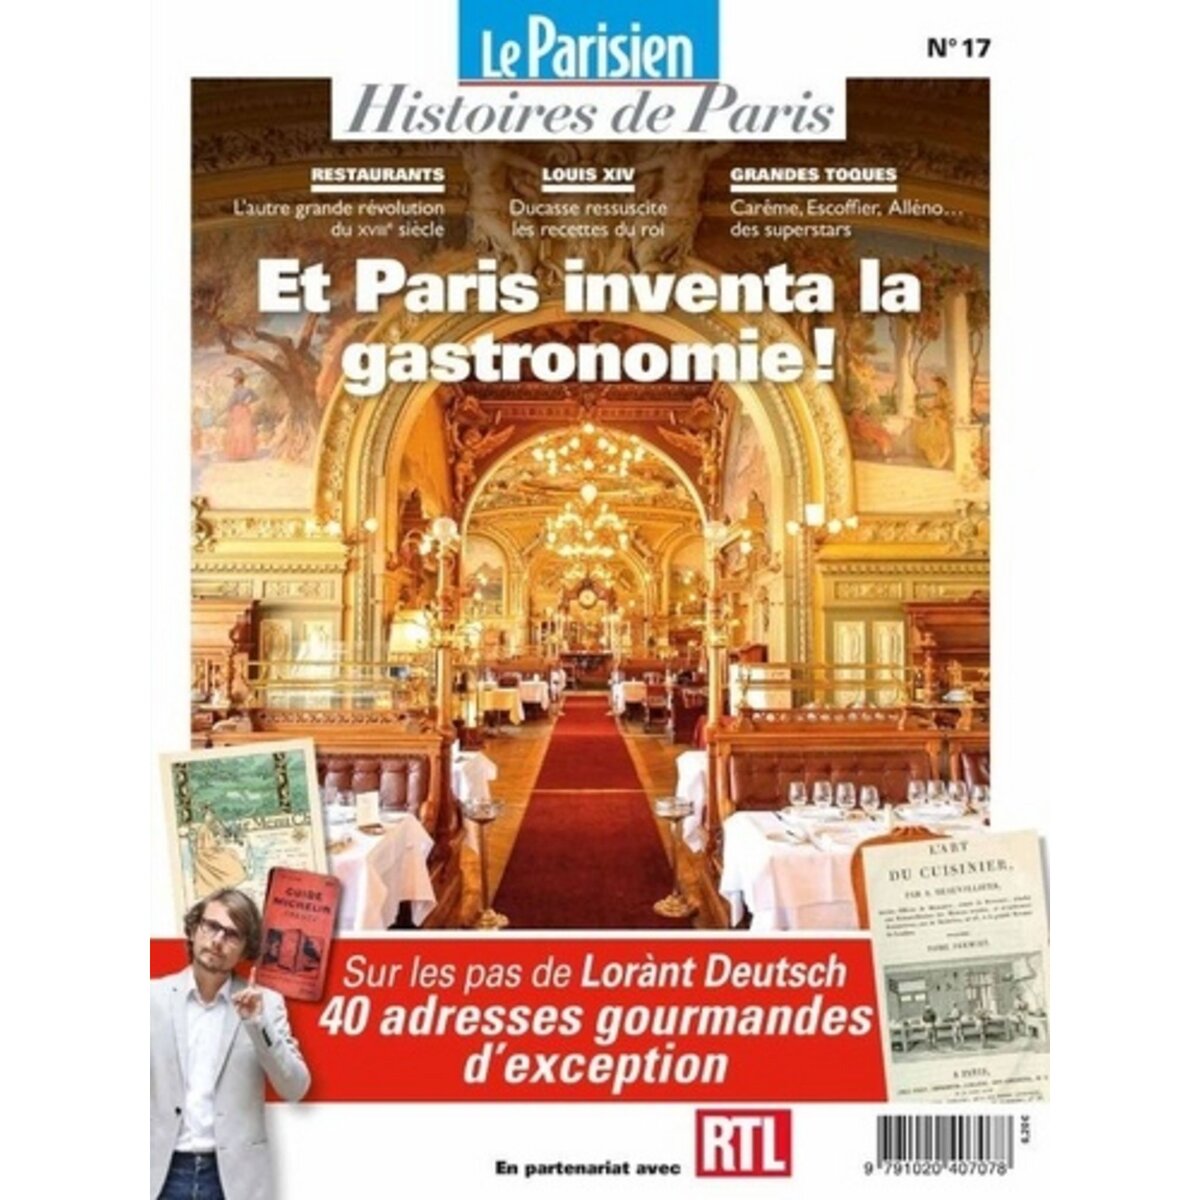  LE PARISIEN HISTOIRES DE PARIS HORS-SERIE N° 17, NOVEMBRE 2021 : ET PARIS INVENTA LA GASTRONOMIE !, Pic Rafael